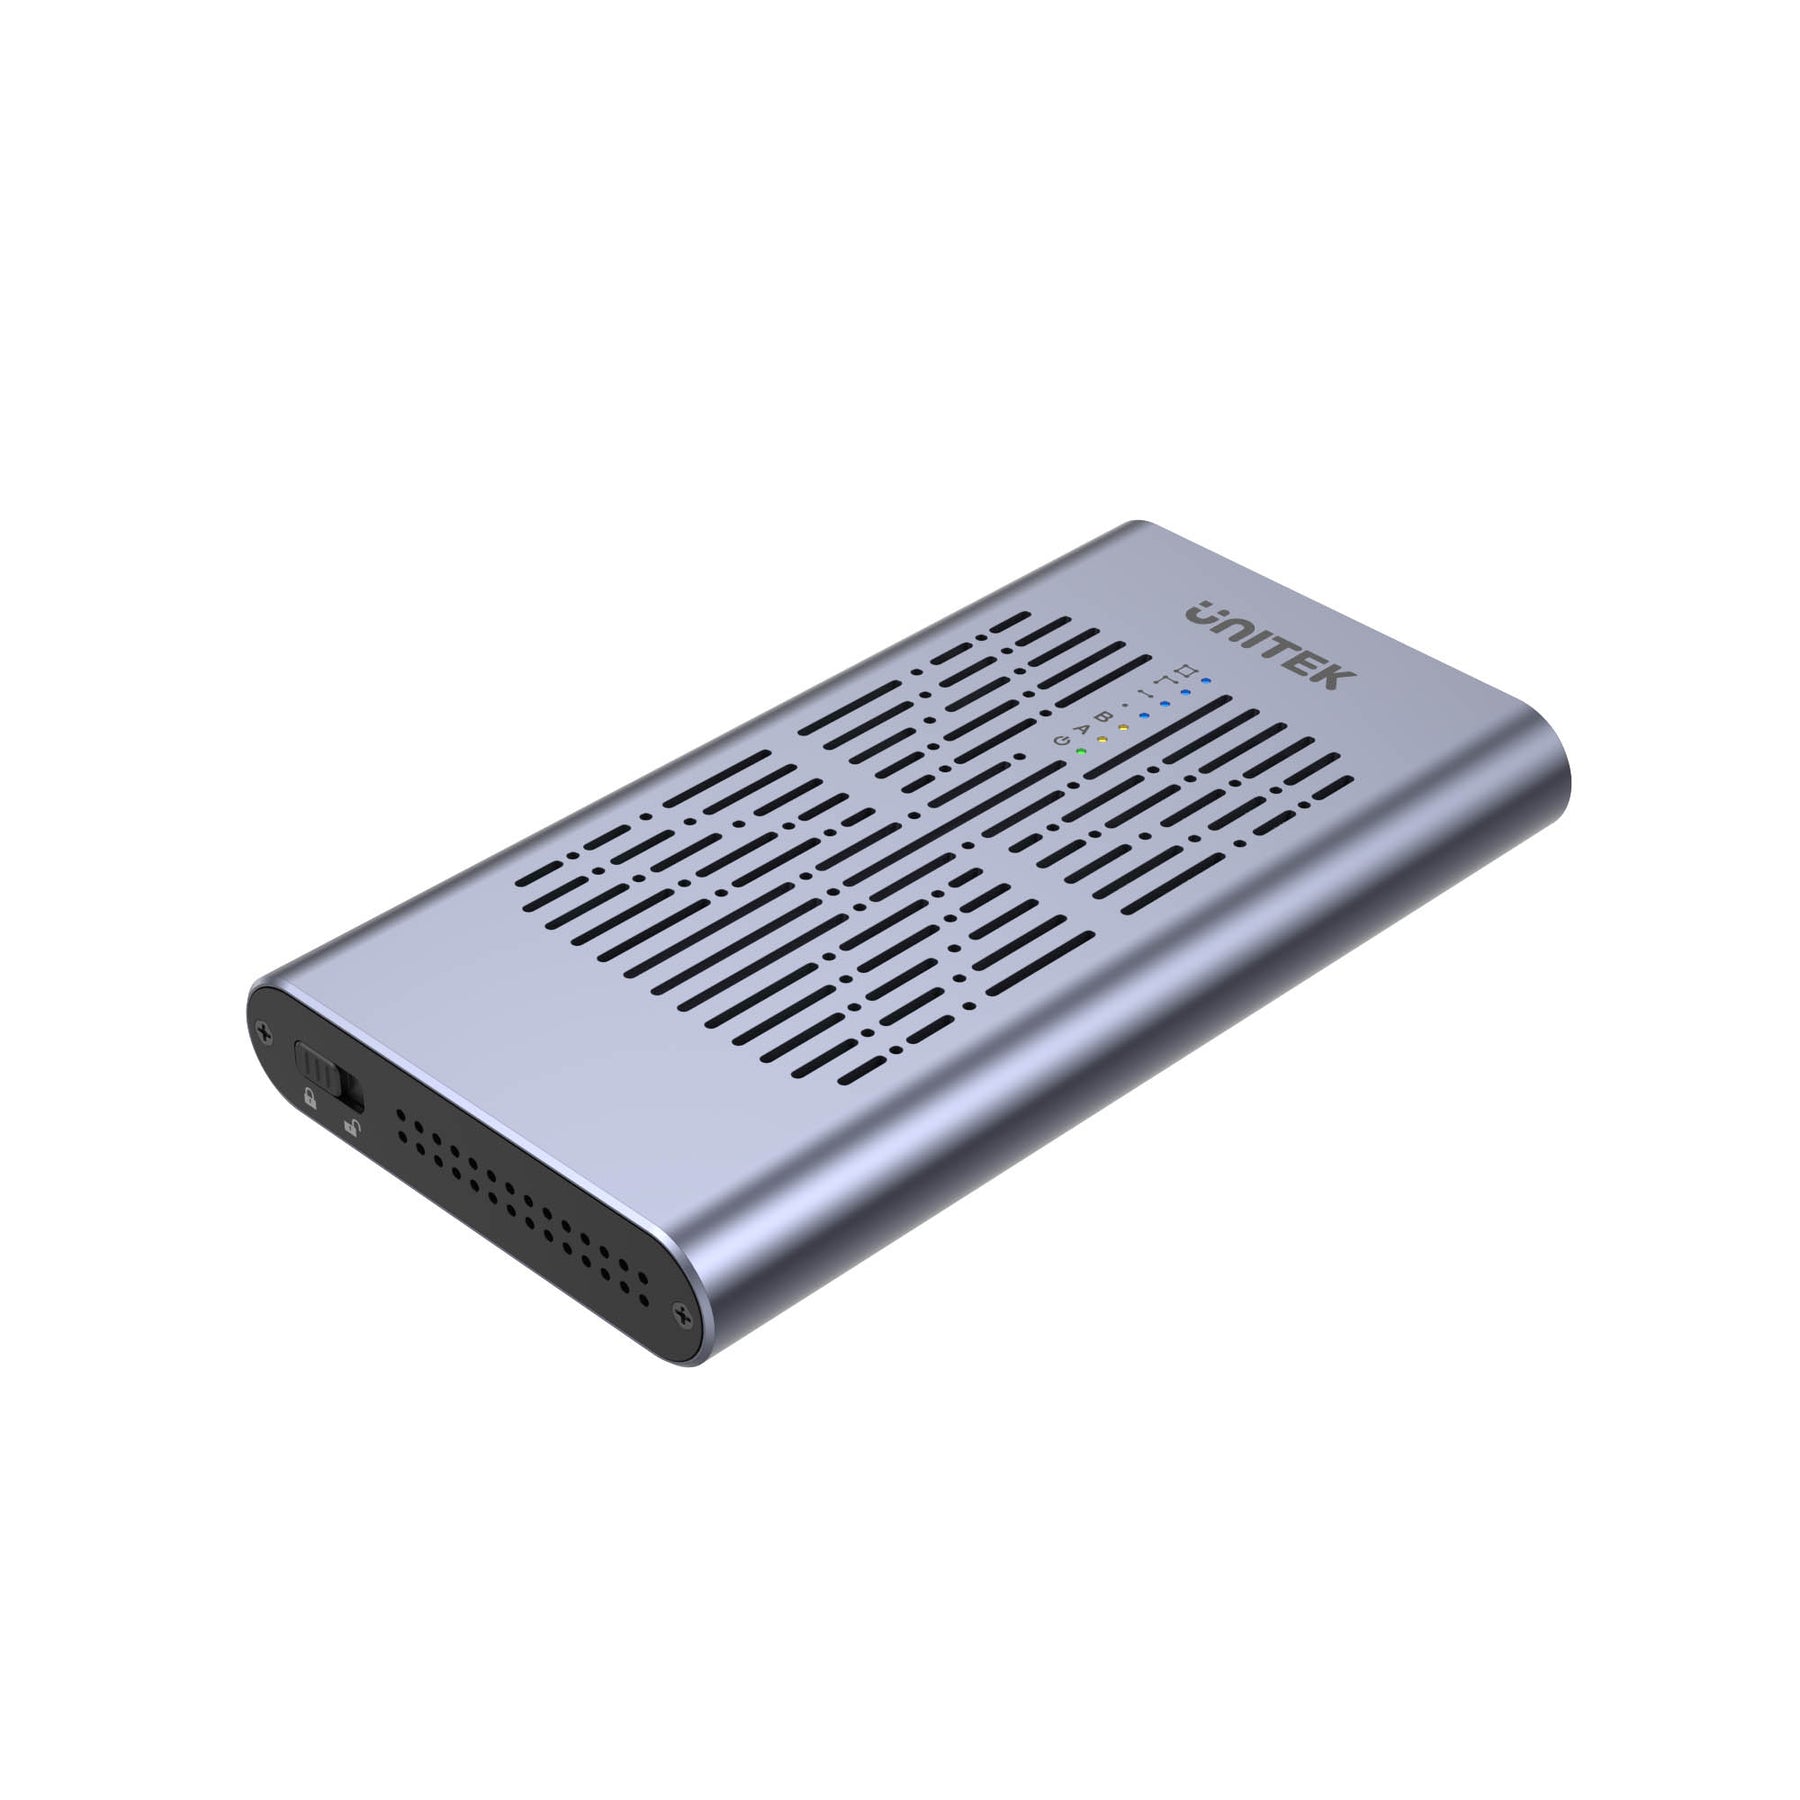 SolidForce 雙槽 USB-C 轉 NVMe M.2 10Gbps 硬碟盒